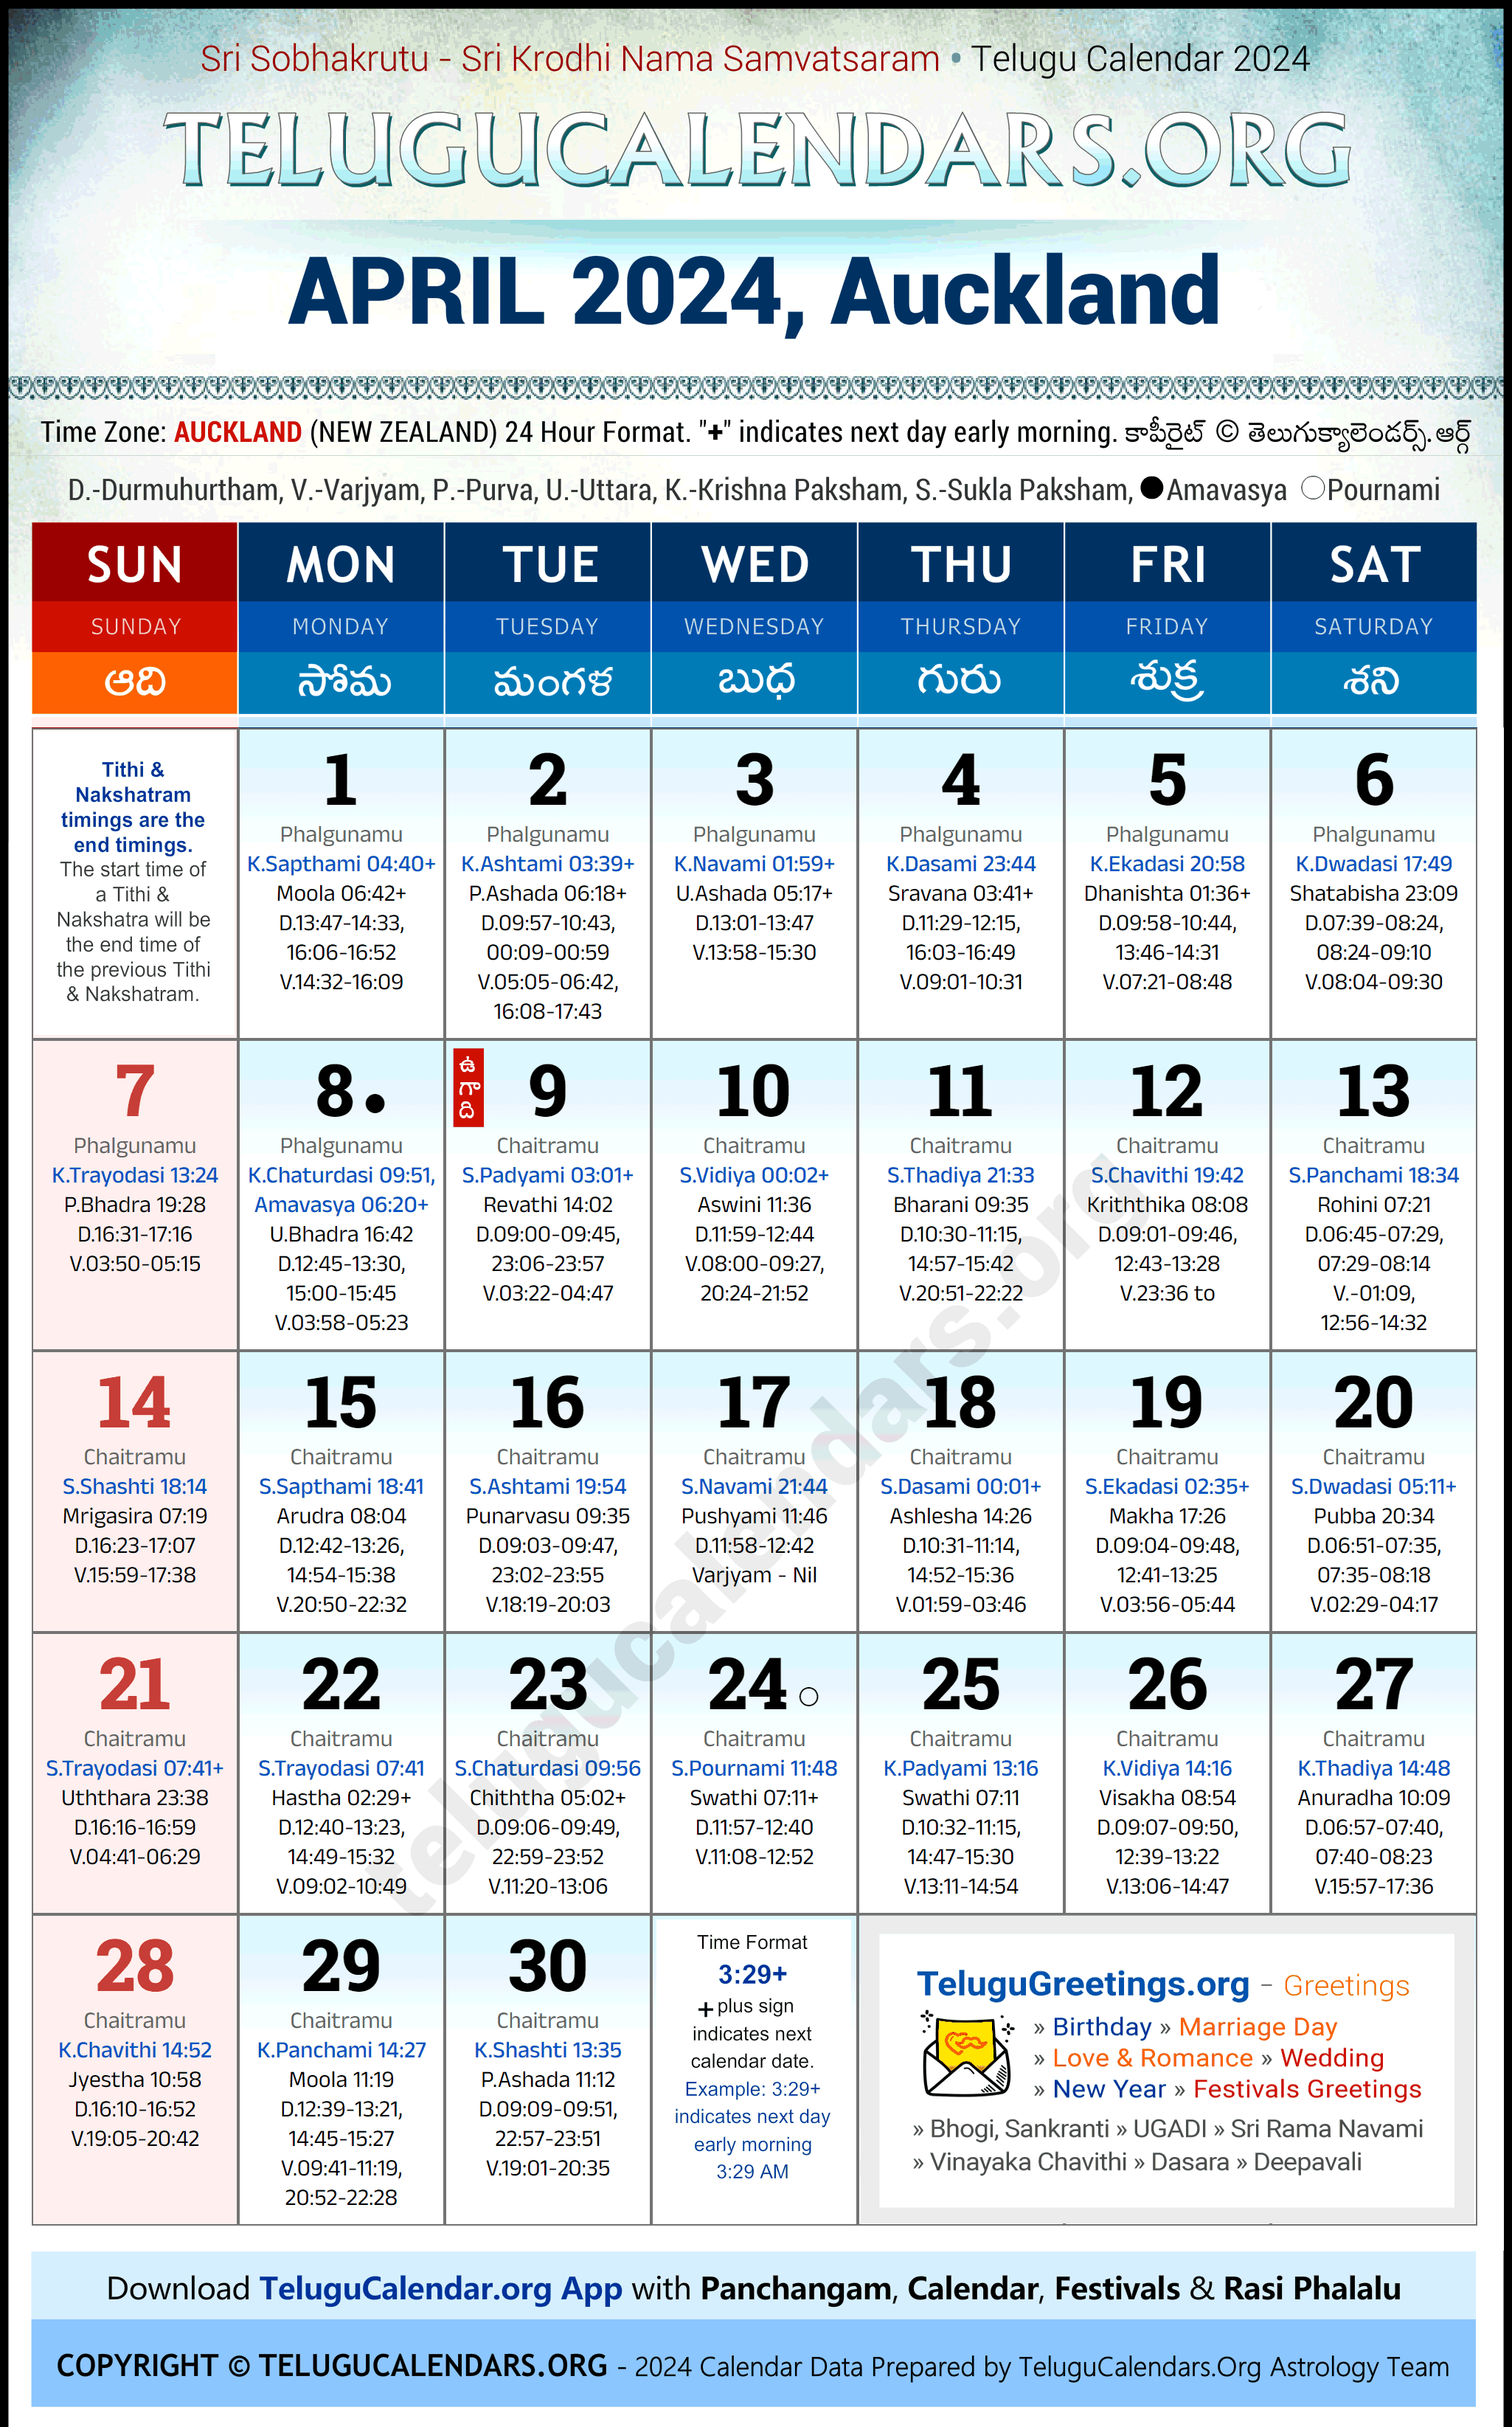 Telugu Calendar 2024 April Festivals for Auckland